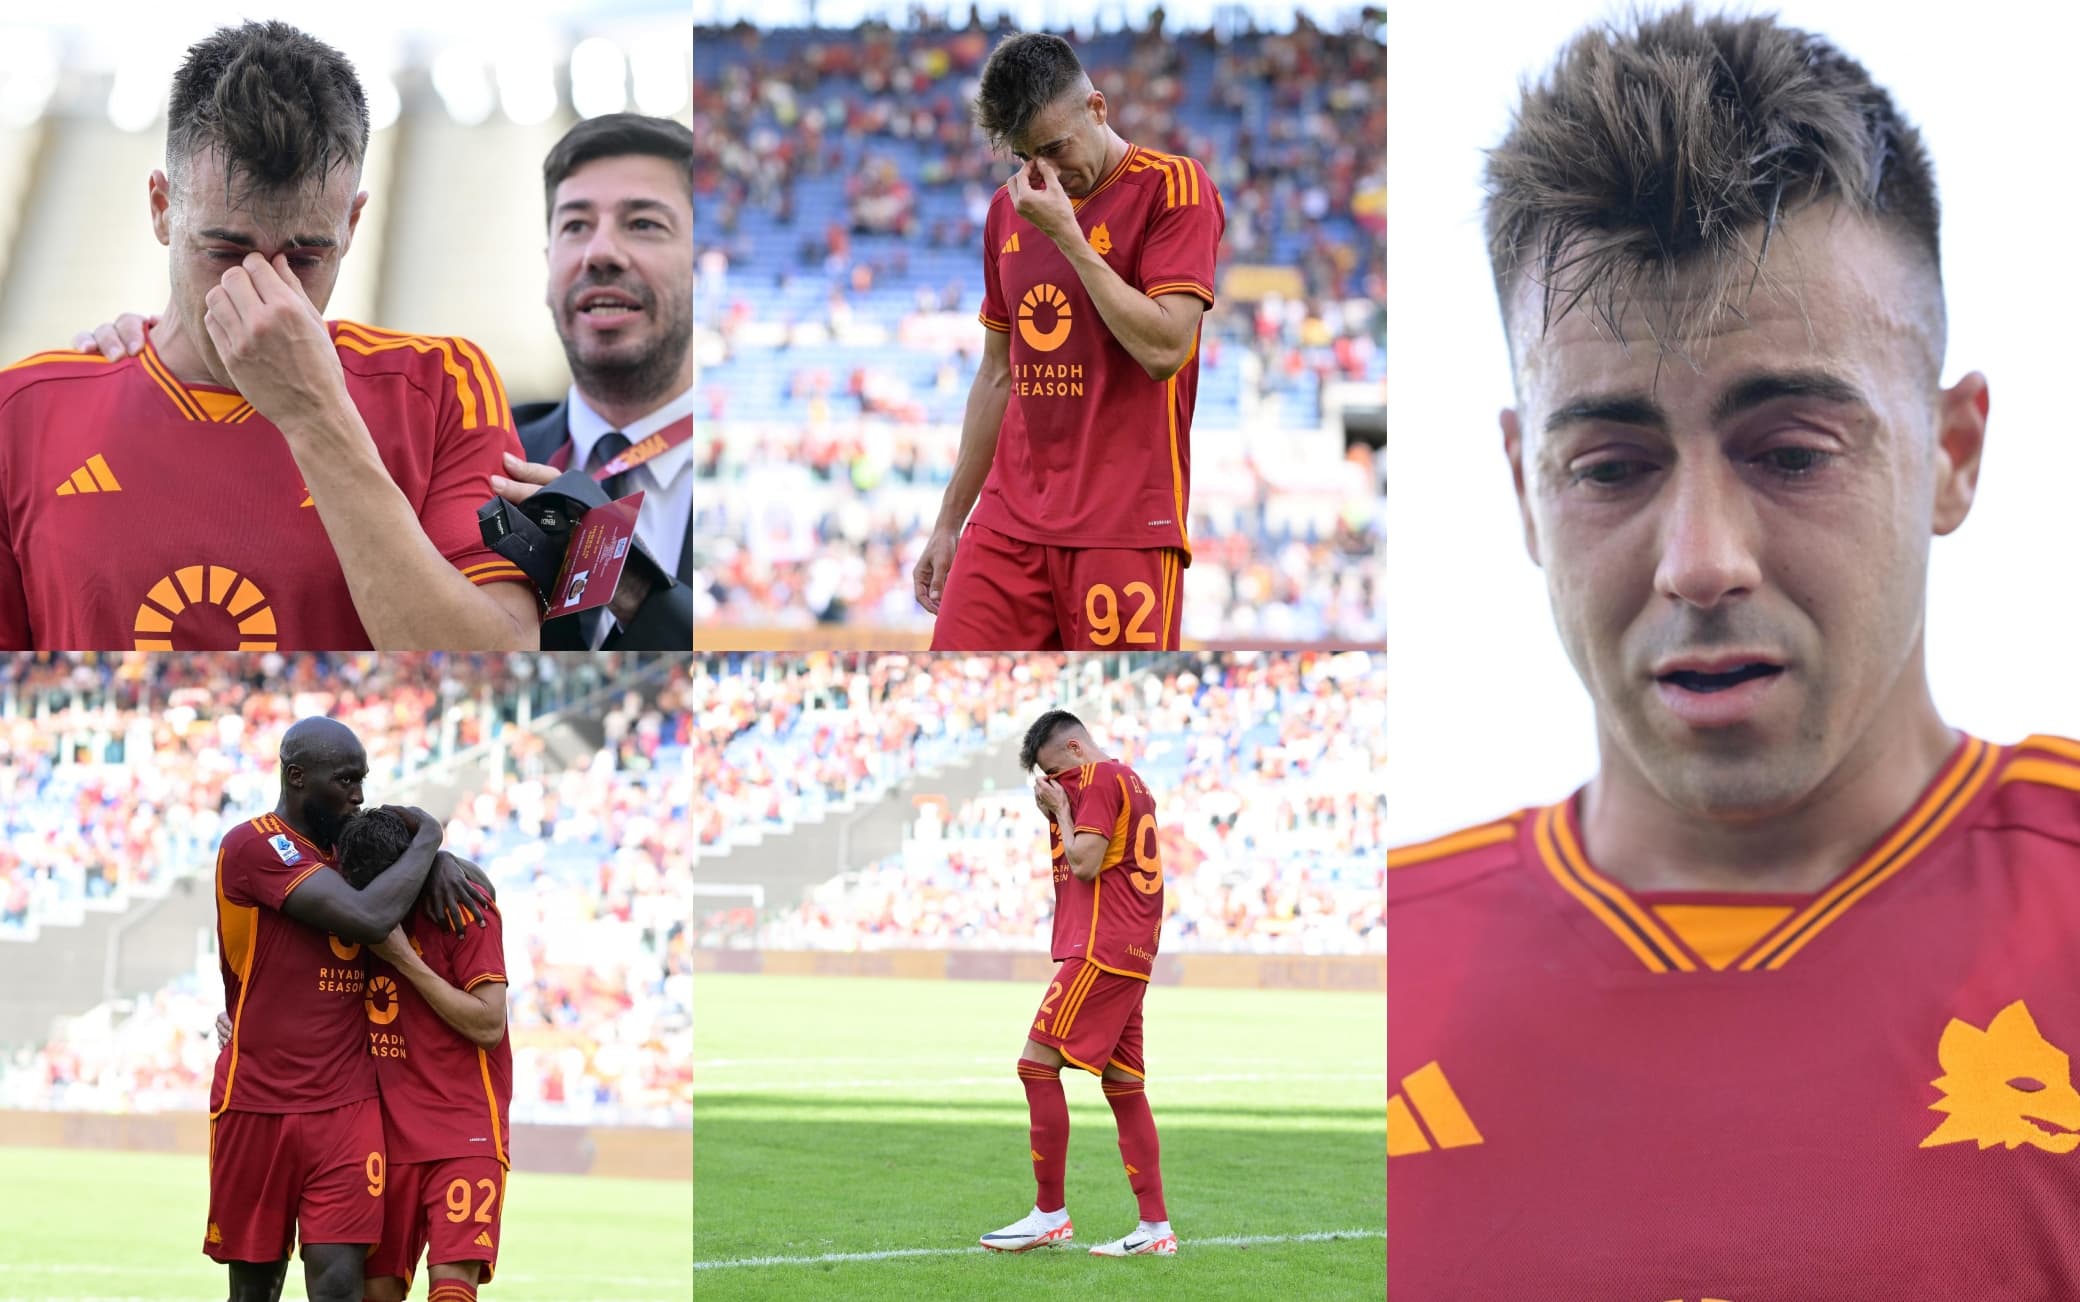 Le lacrime di El Shaarawy dopo il gol decisivo al Monza